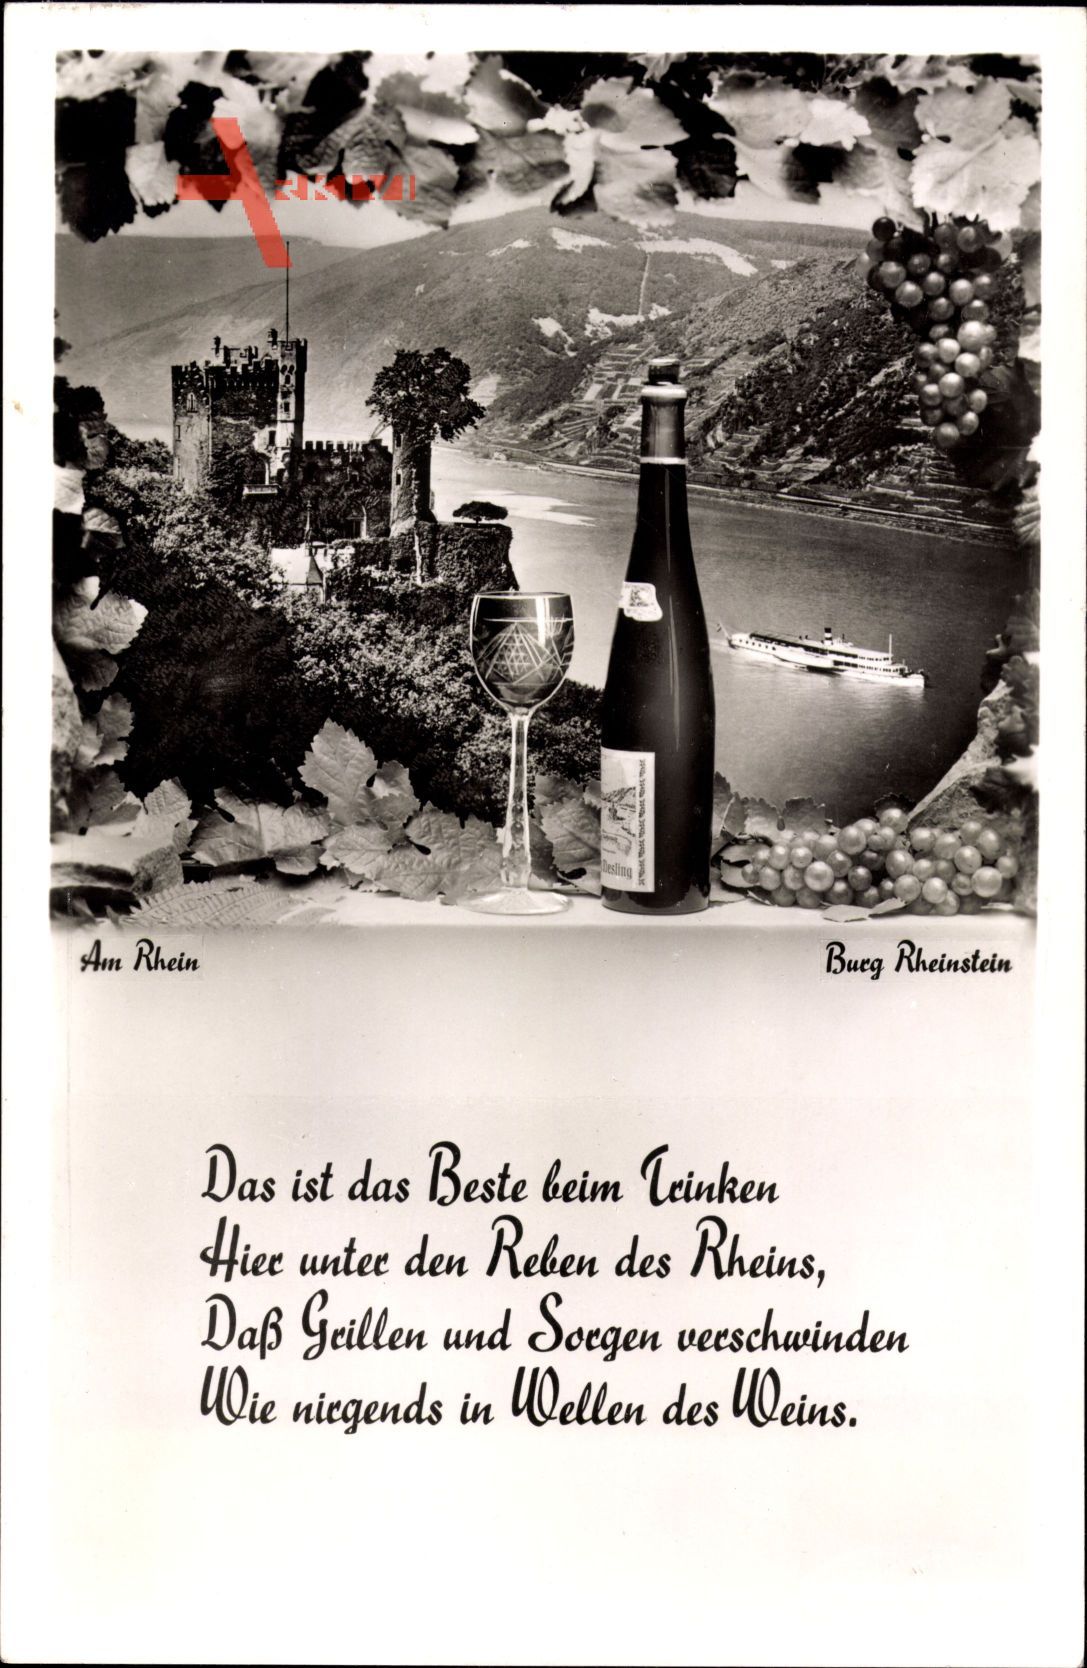 Burg Rheinstein, Das ist das Beste beim Trinken, Weinreben, Wein